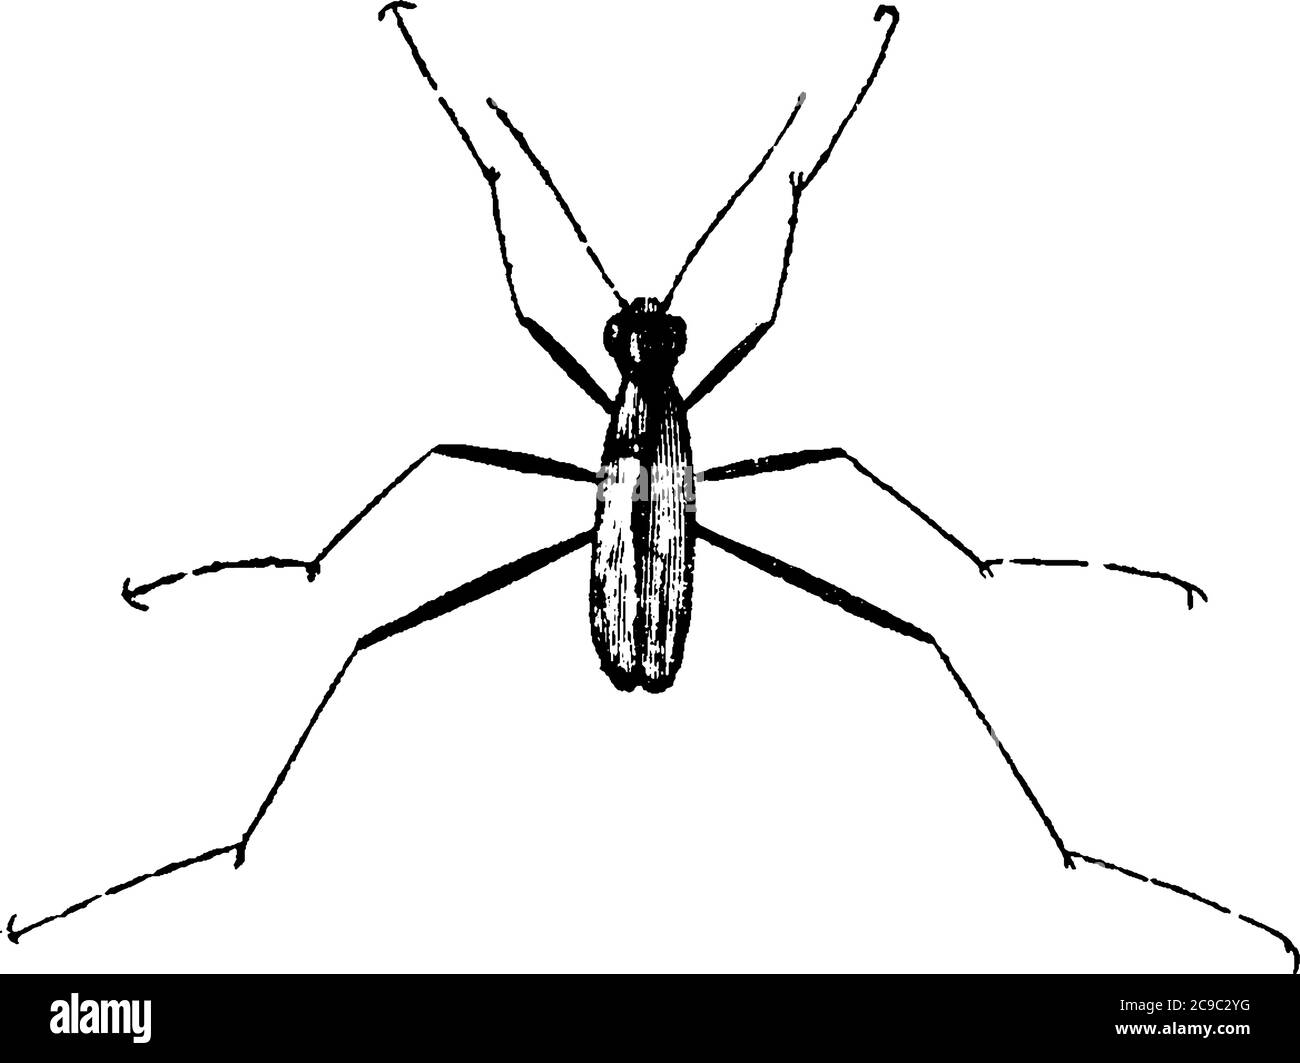 Una rappresentazione tipica di un insetto, il coleottero della tigre, che ha gli occhi rigonfianti e le gambe snella, disegno di linea vintage o illustrazione di incisione. Illustrazione Vettoriale